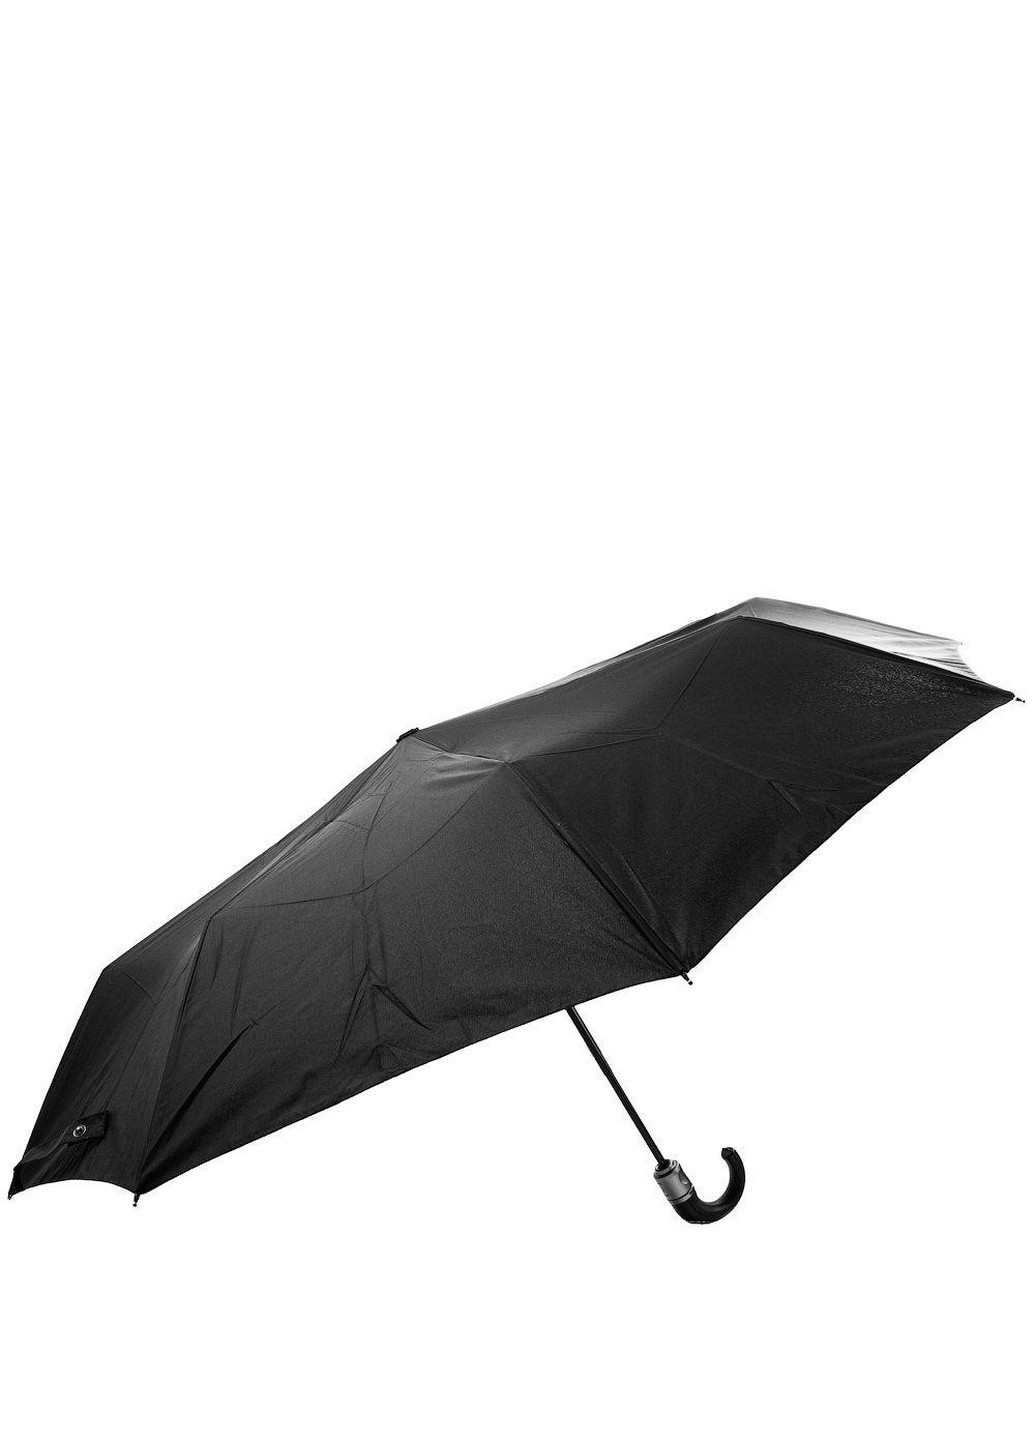 Мужской складной зонт автомат 109 см Lamberti (260330129)